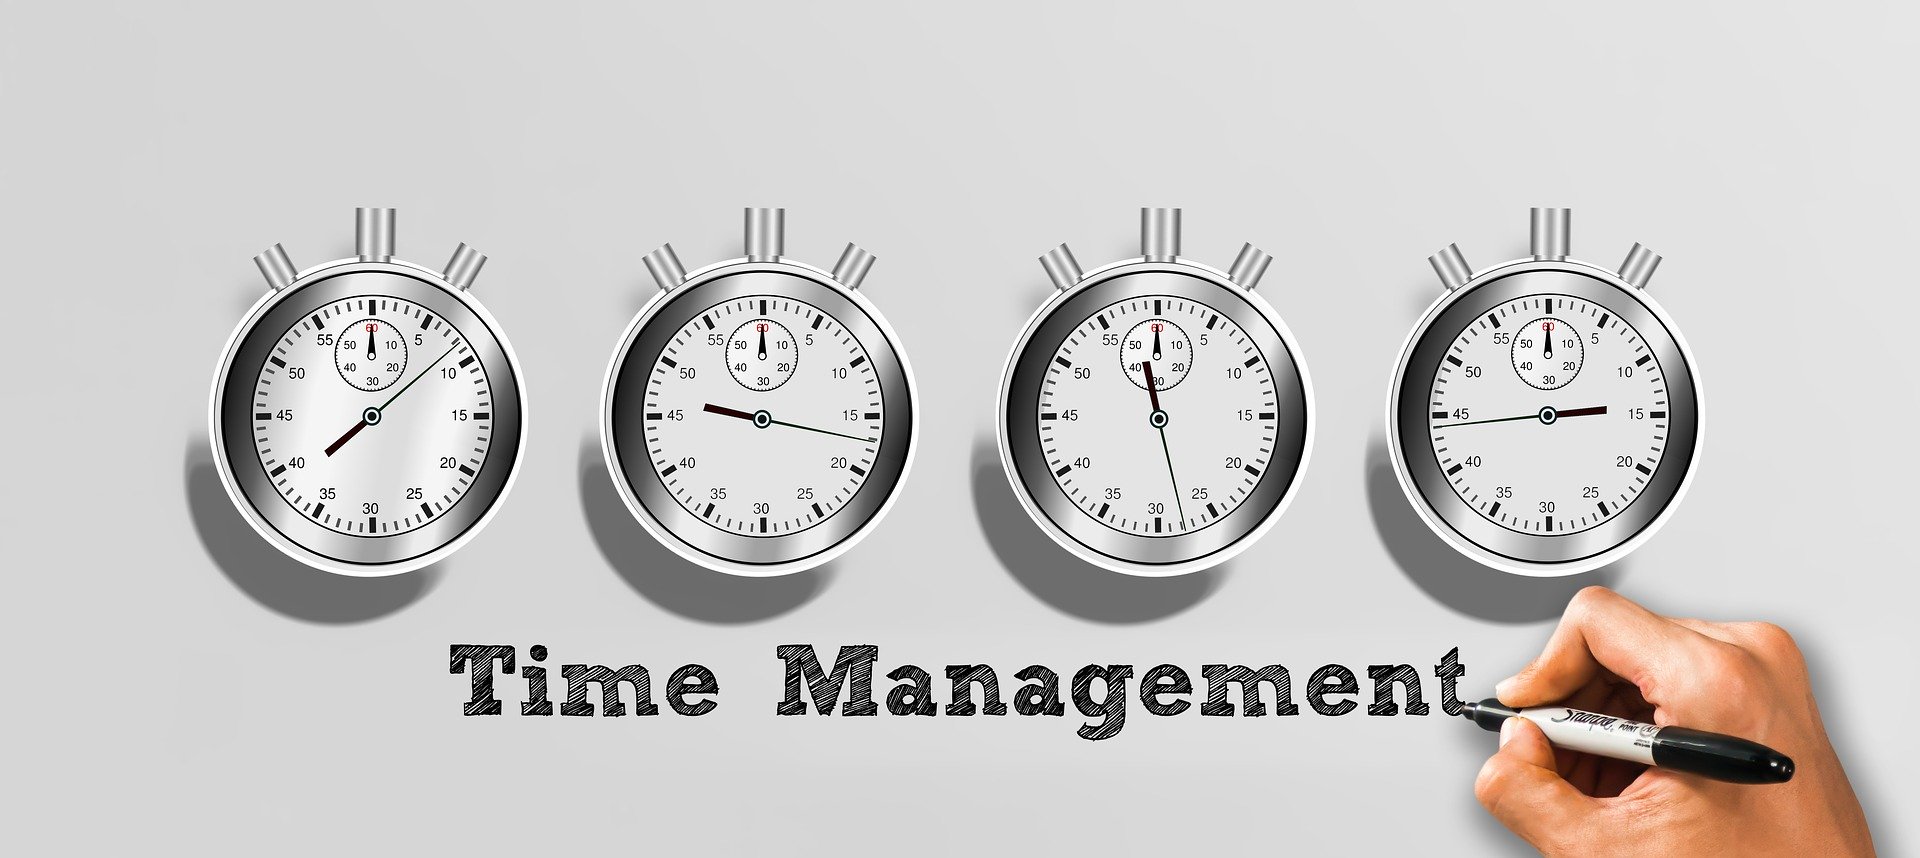 Zeitmanagement - berufliche, private und ehrenamtliche Termine unter einen Hut bringen